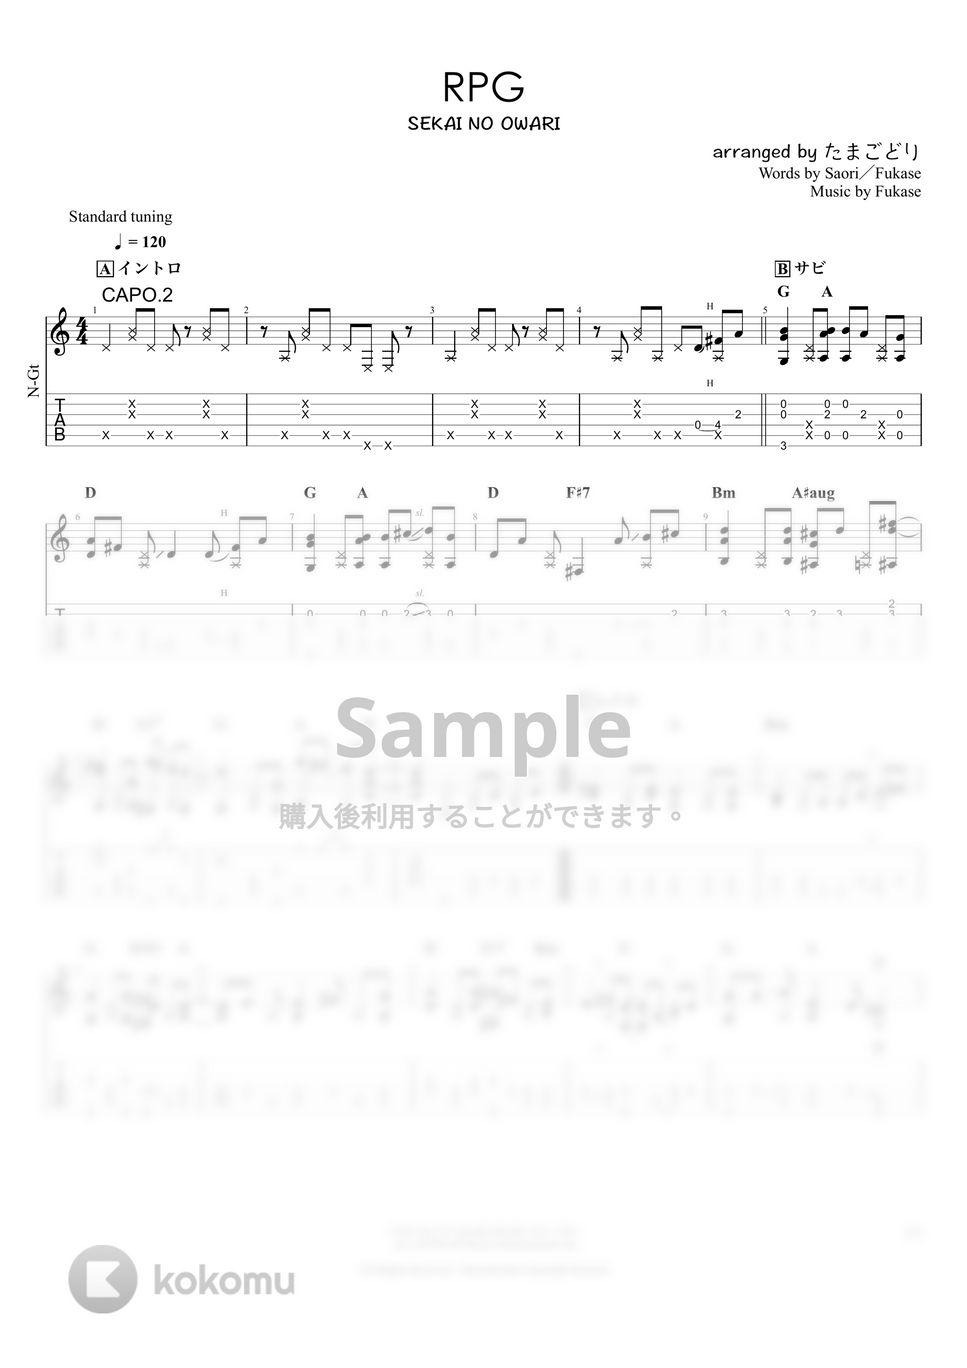 SEKAI NO OWARI - RPG (ソロギター) by たまごどり